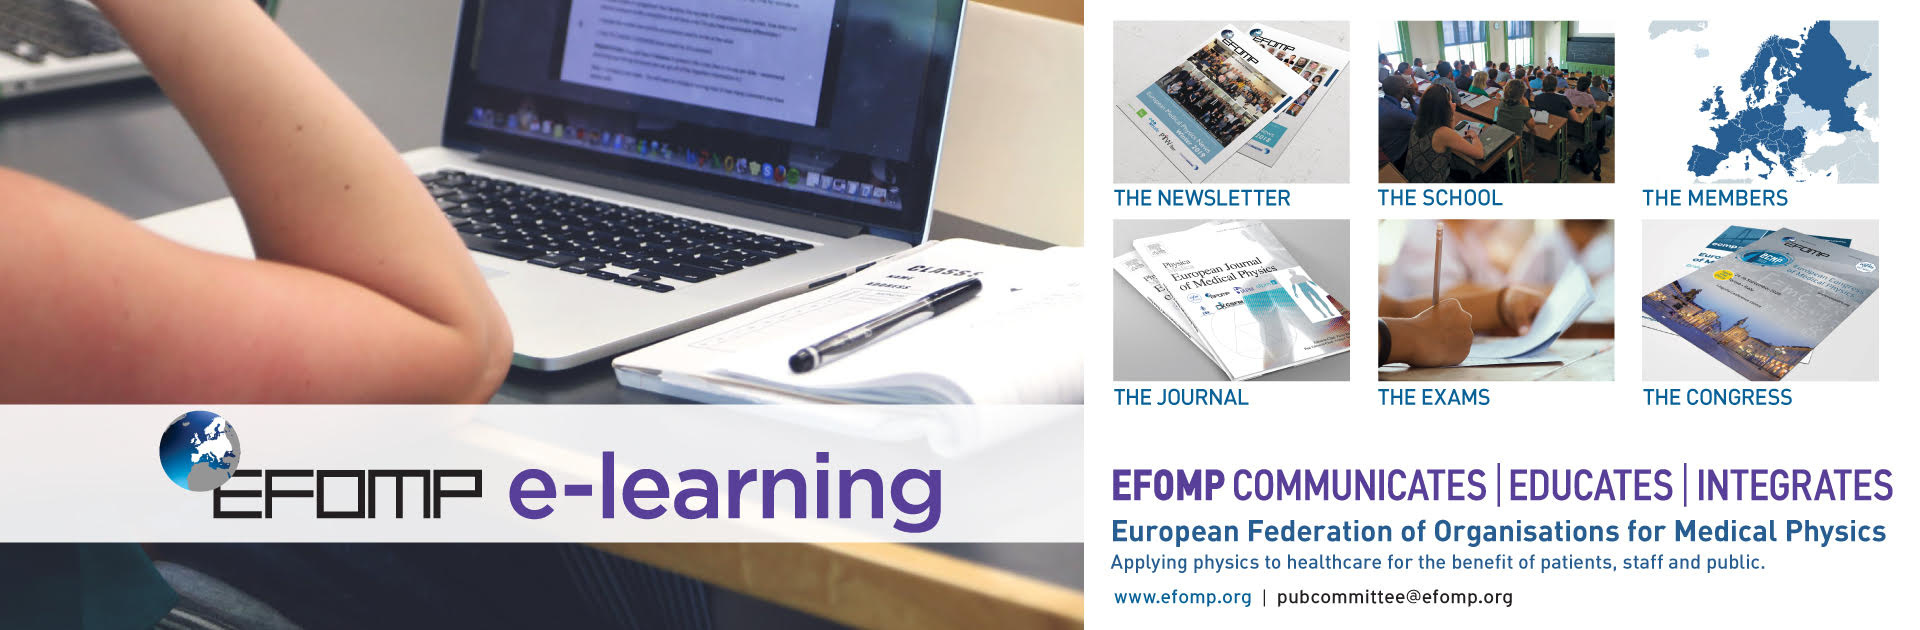 EFOMP e-learning platform